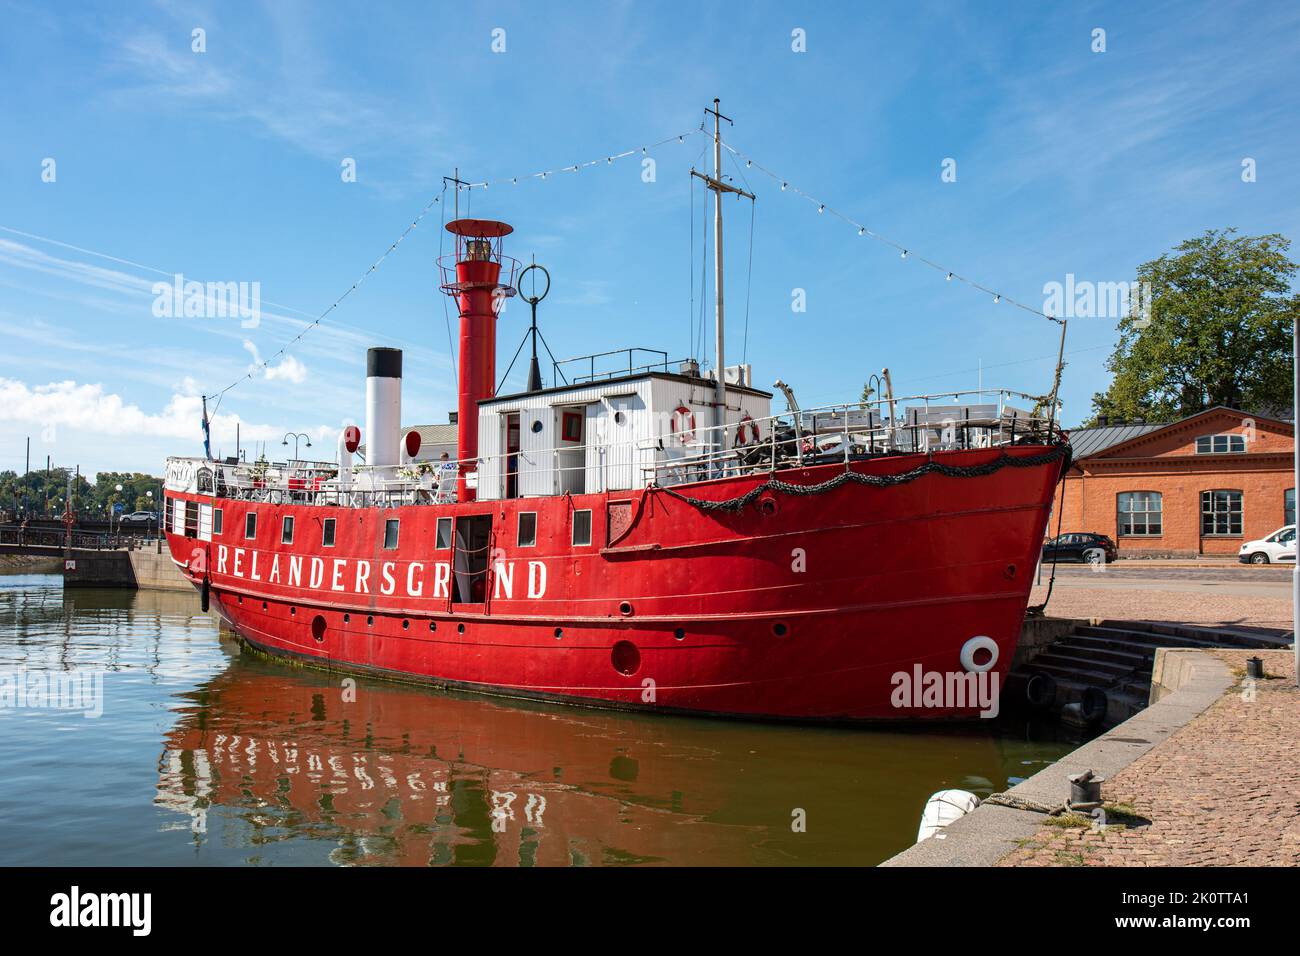 Restaurant-Schiff Relandersgrund, früher ein Feuerschiff, im Kruununhaka-Viertel von Helsinki, Finnland Stockfoto